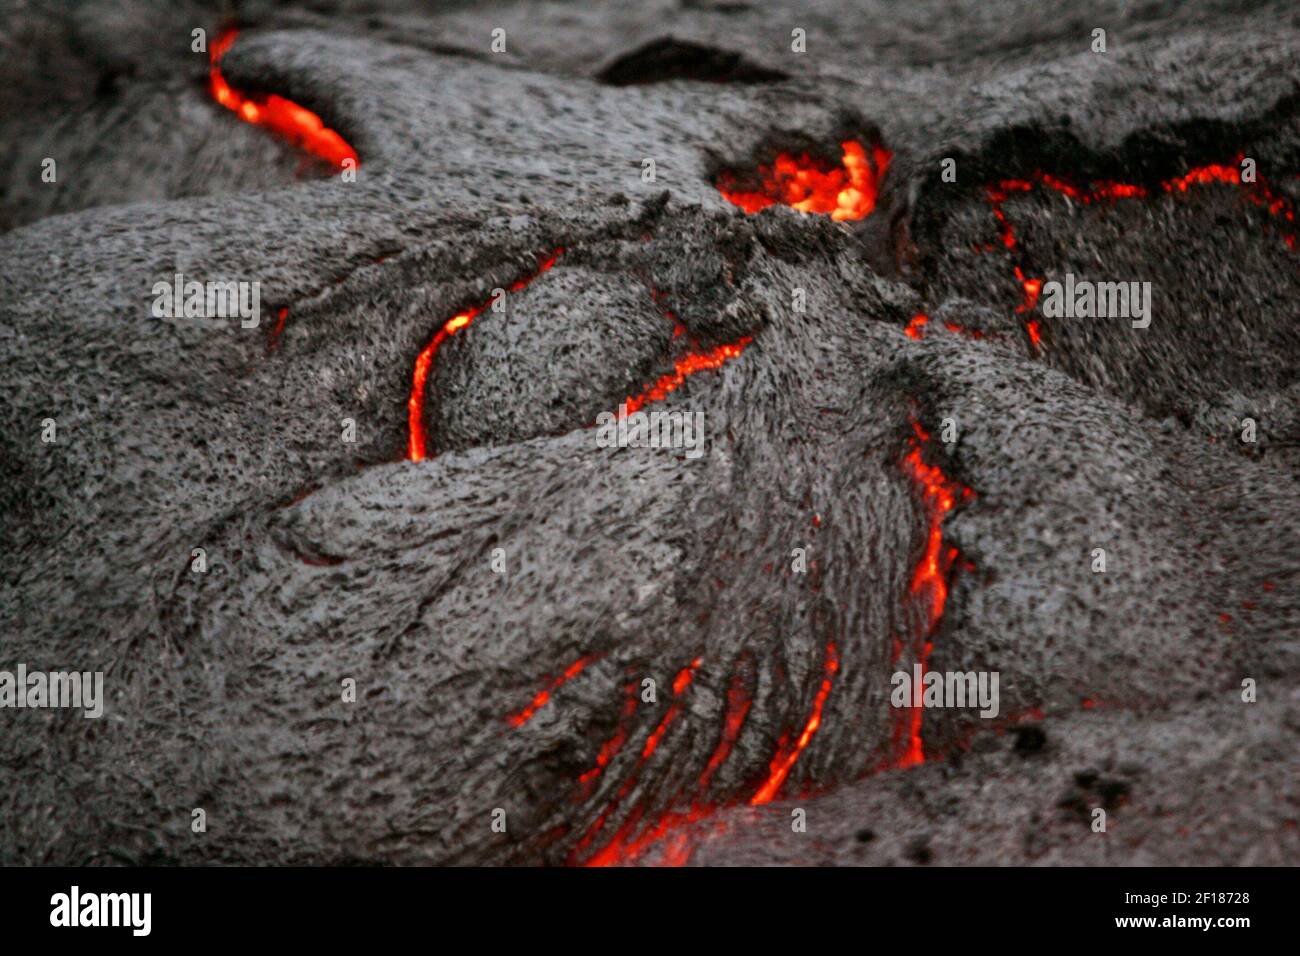 -- NO HAY MAGS, NO HAY VENTAS -- HISTORIA DE VIAJES de KRT SLUGED: UST-KILAUEA FOTOGRAFÍA de KRT POR LOUIS DeLuca/DALLAS MORNING NEWS (Mayo 2) un detalle de una de las áreas de lava activa casi parece una cara amenazadora en Kilauea, un volcán activo en la gran isla de Hawai Los curiosos deben enfrentarse a una caminata de tres horas por los flujos de lava seca para ver los nuevos de cerca. (Foto de lde) 2005 Foto de stock